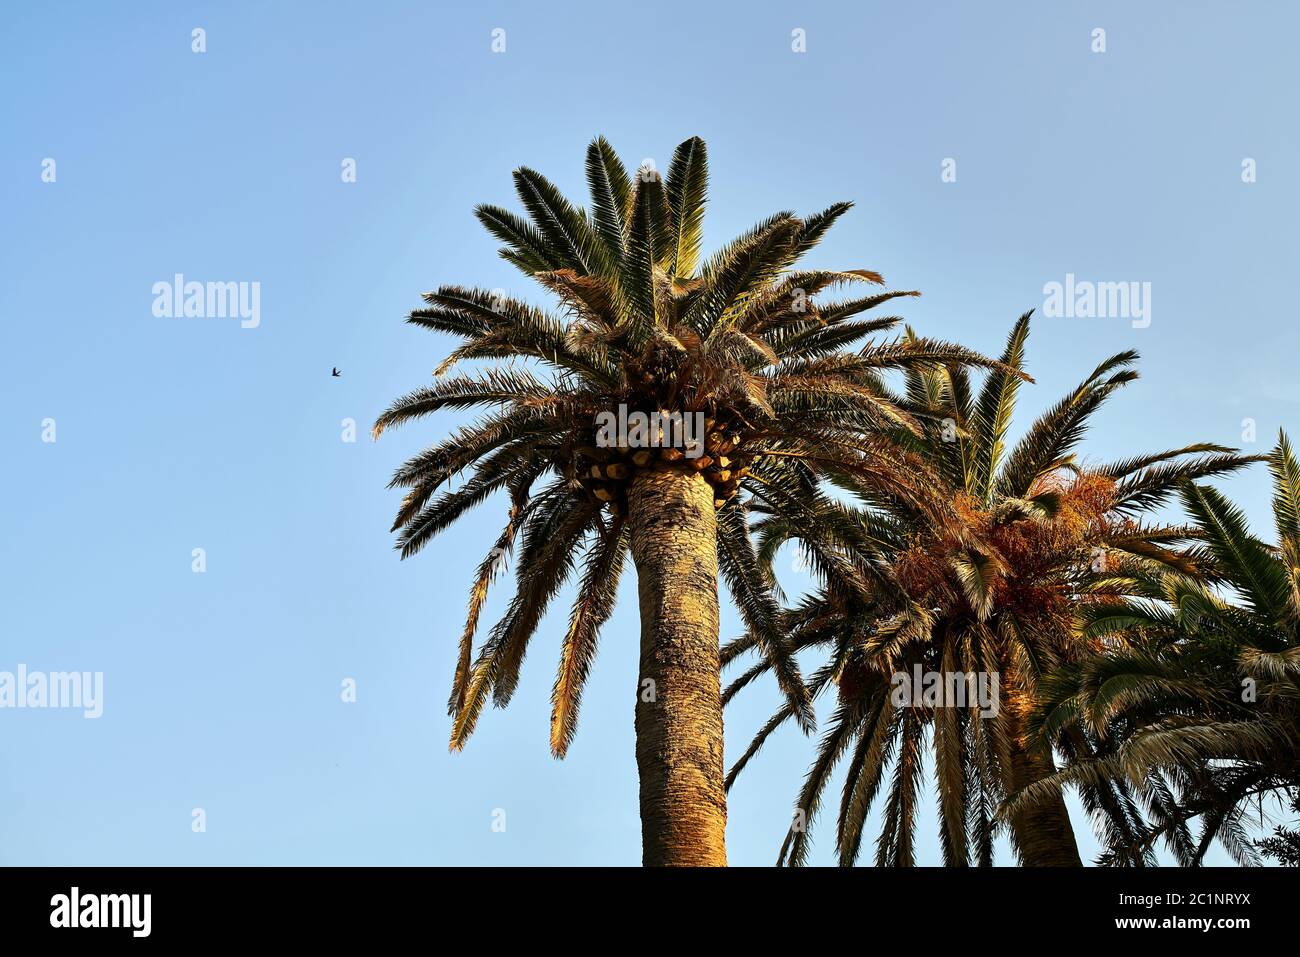 Poche palme con foglie verde-bruna su sfondo cielo soleggiato Foto Stock